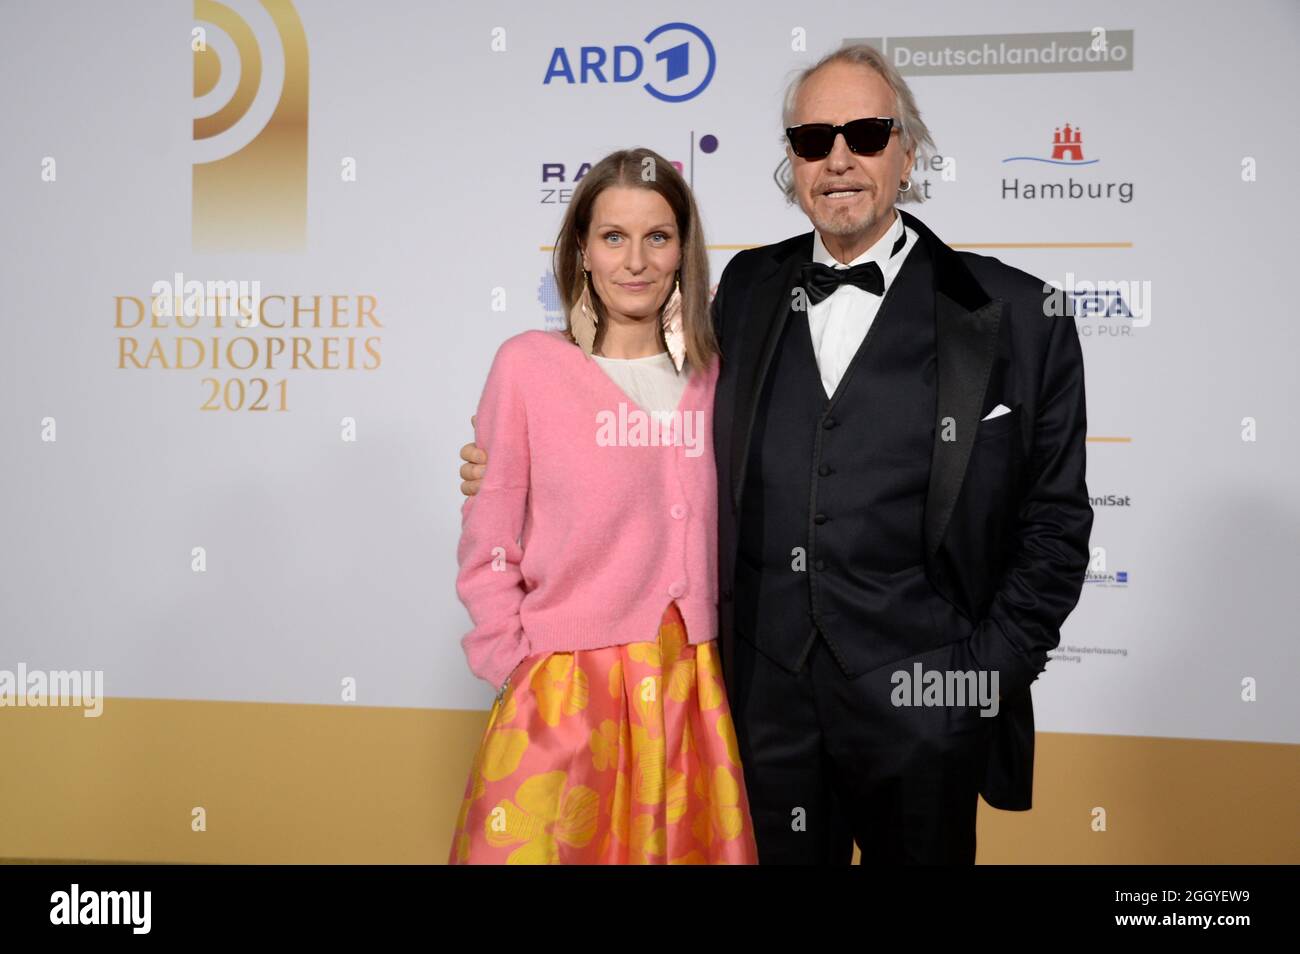 Hamburg der 02.09.2021 - Rainer schöne und seine Ehefrau Anja schöne bei der Verleihung des Deutschen Radiopreises 2021 in Hamburg auf dem goldenen Teppich. Stockfoto